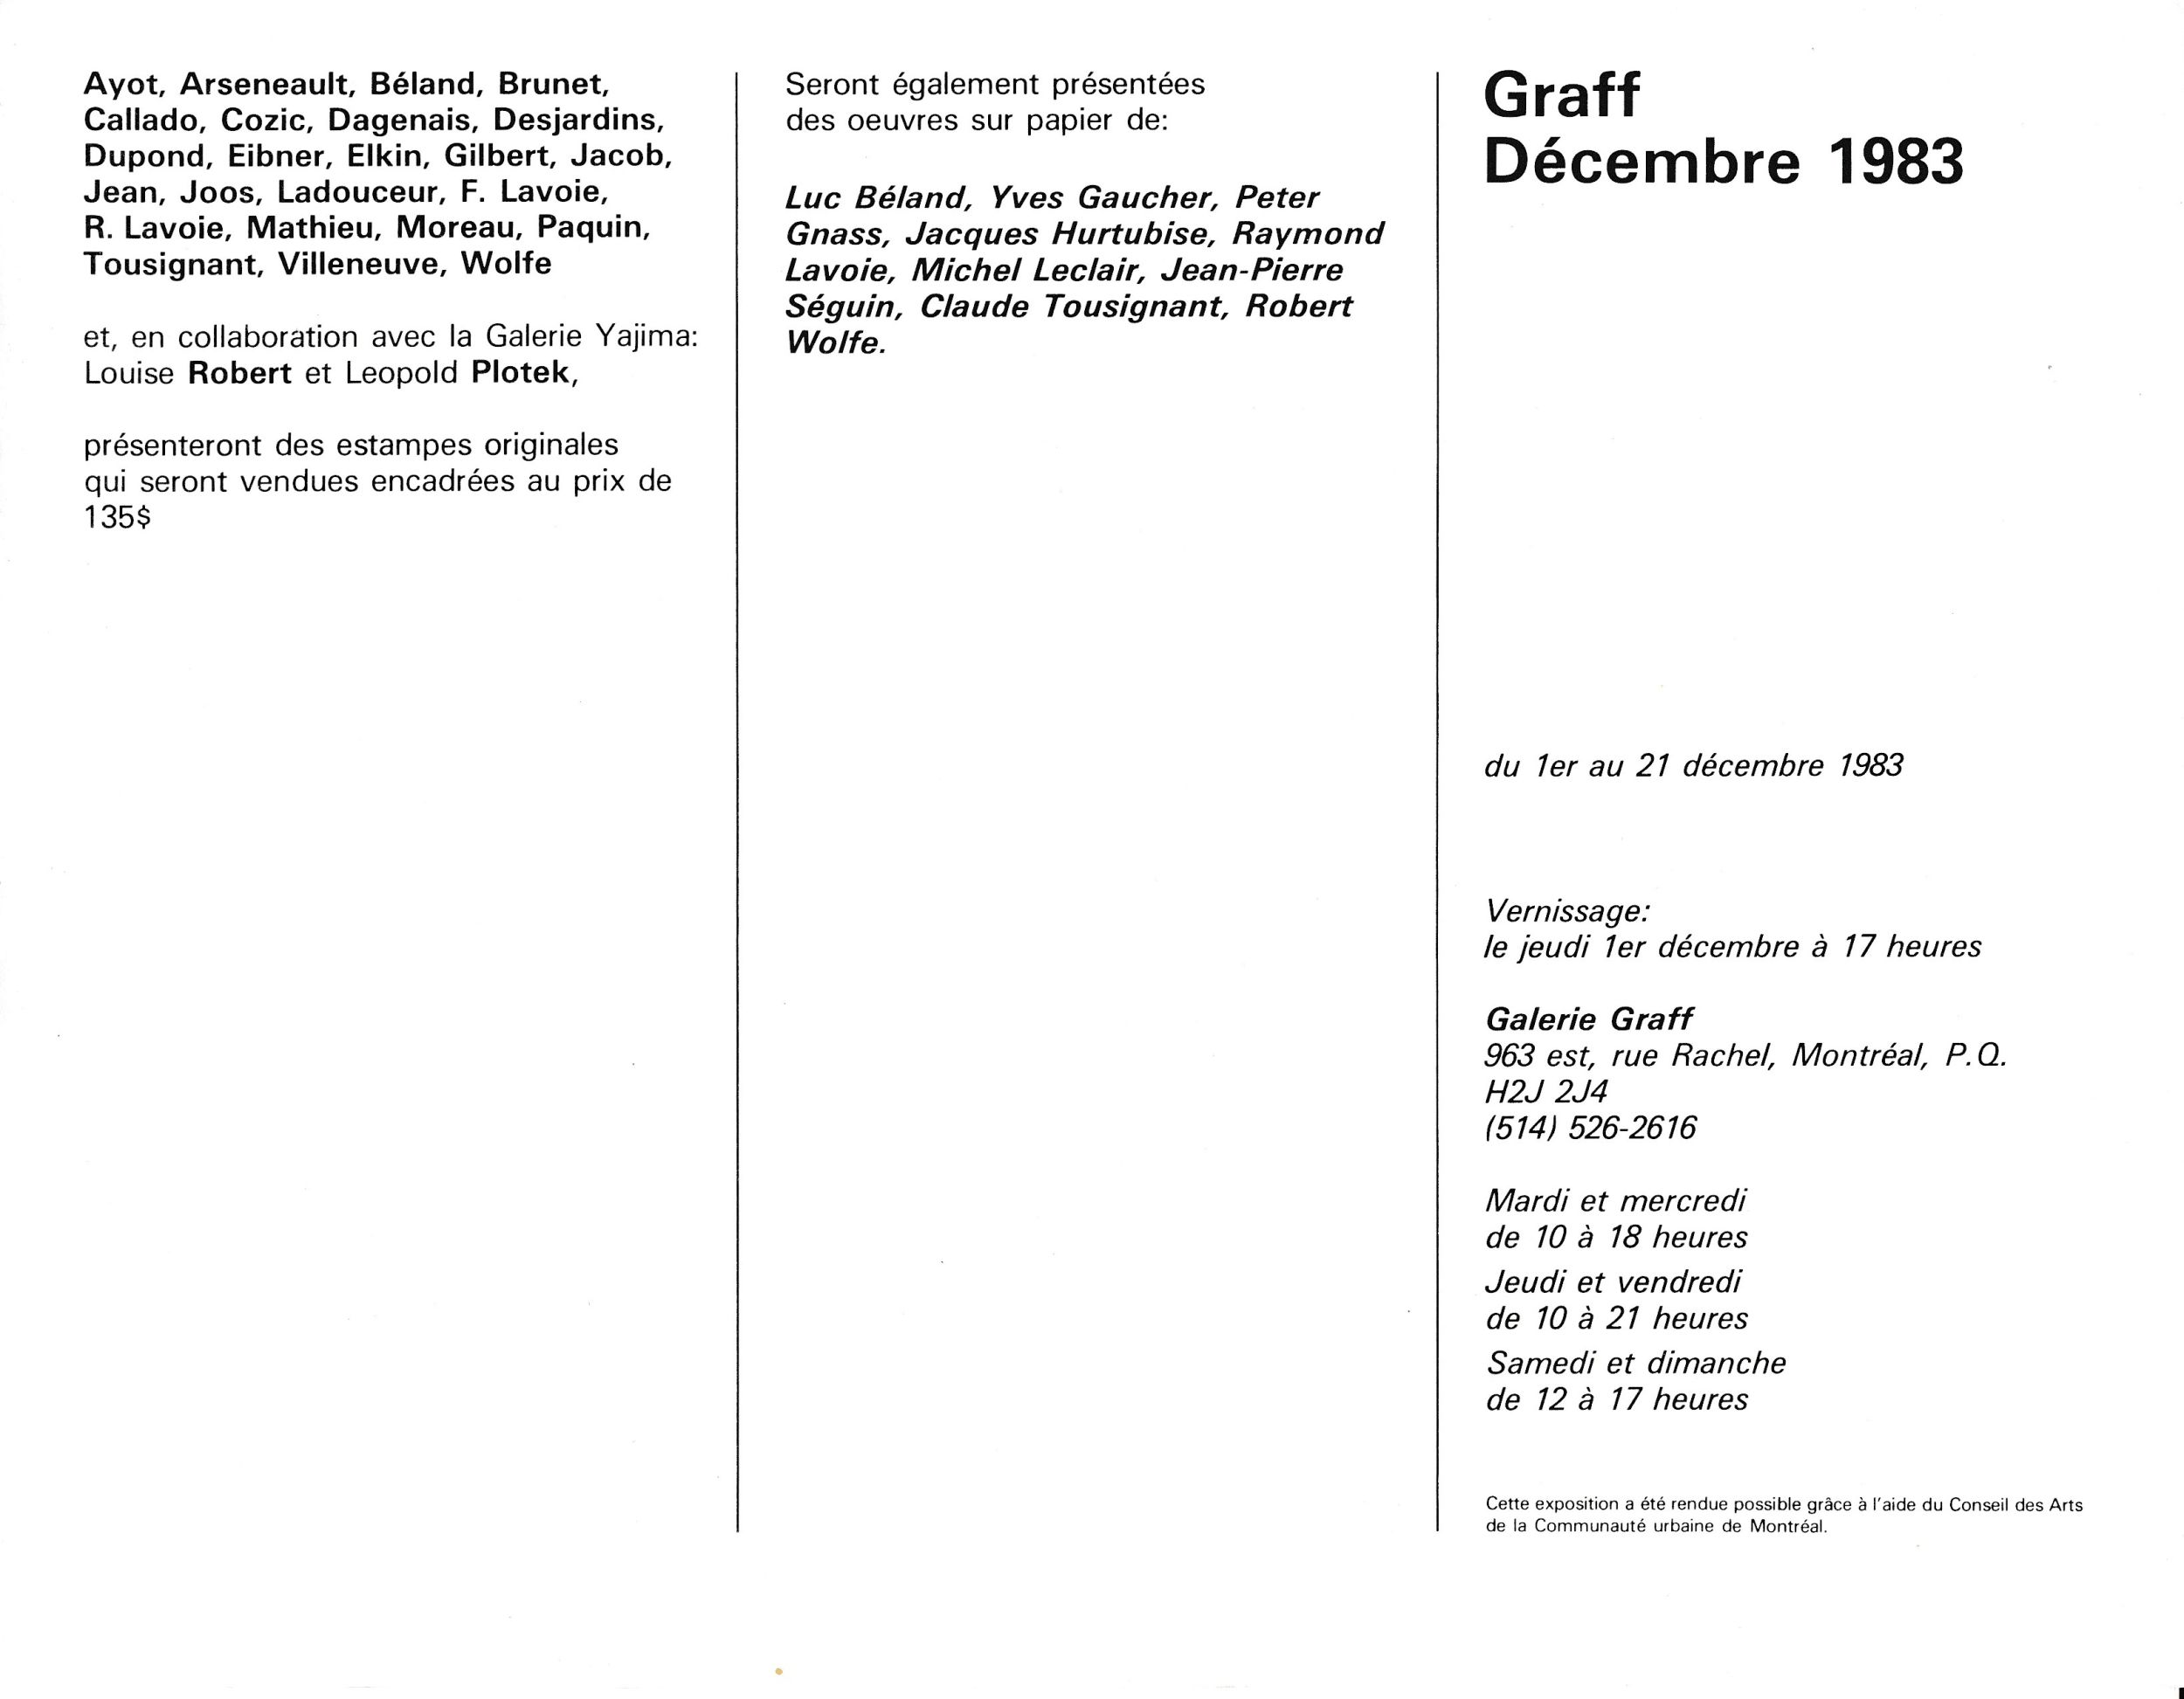 Carton d’invitation de l’exposition Graff. Décembre 1983, Galerie Graff, Montréal, 1983. Verso.